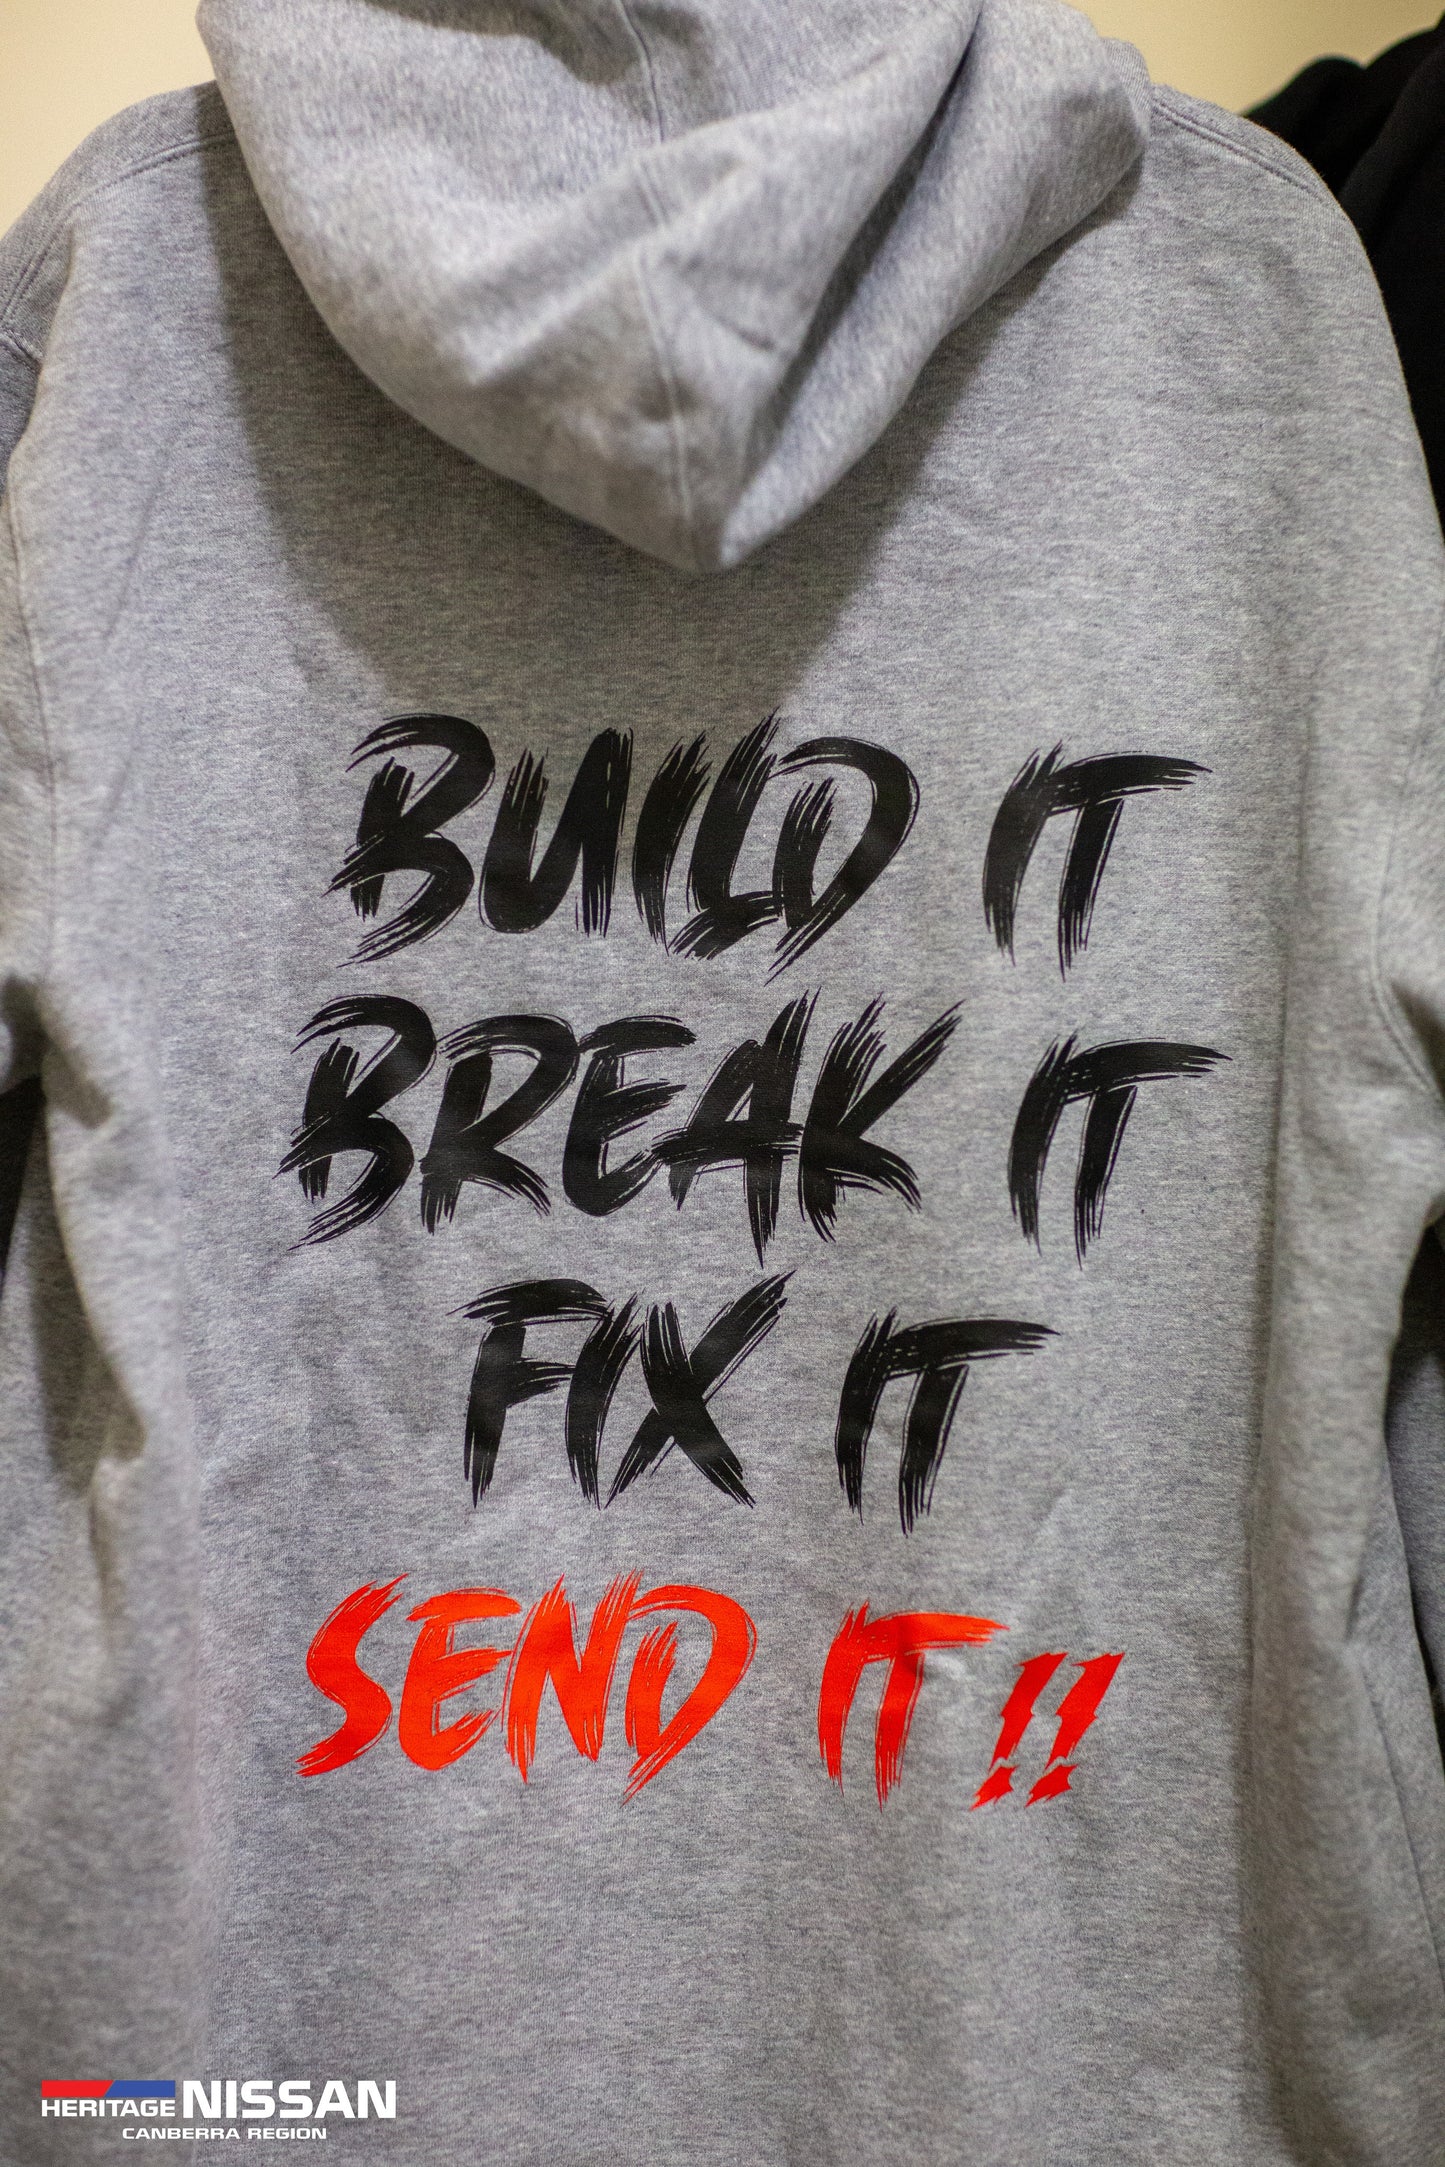 HNCR - Hoodies - Build It, Break It, Fix It, Send it!!!